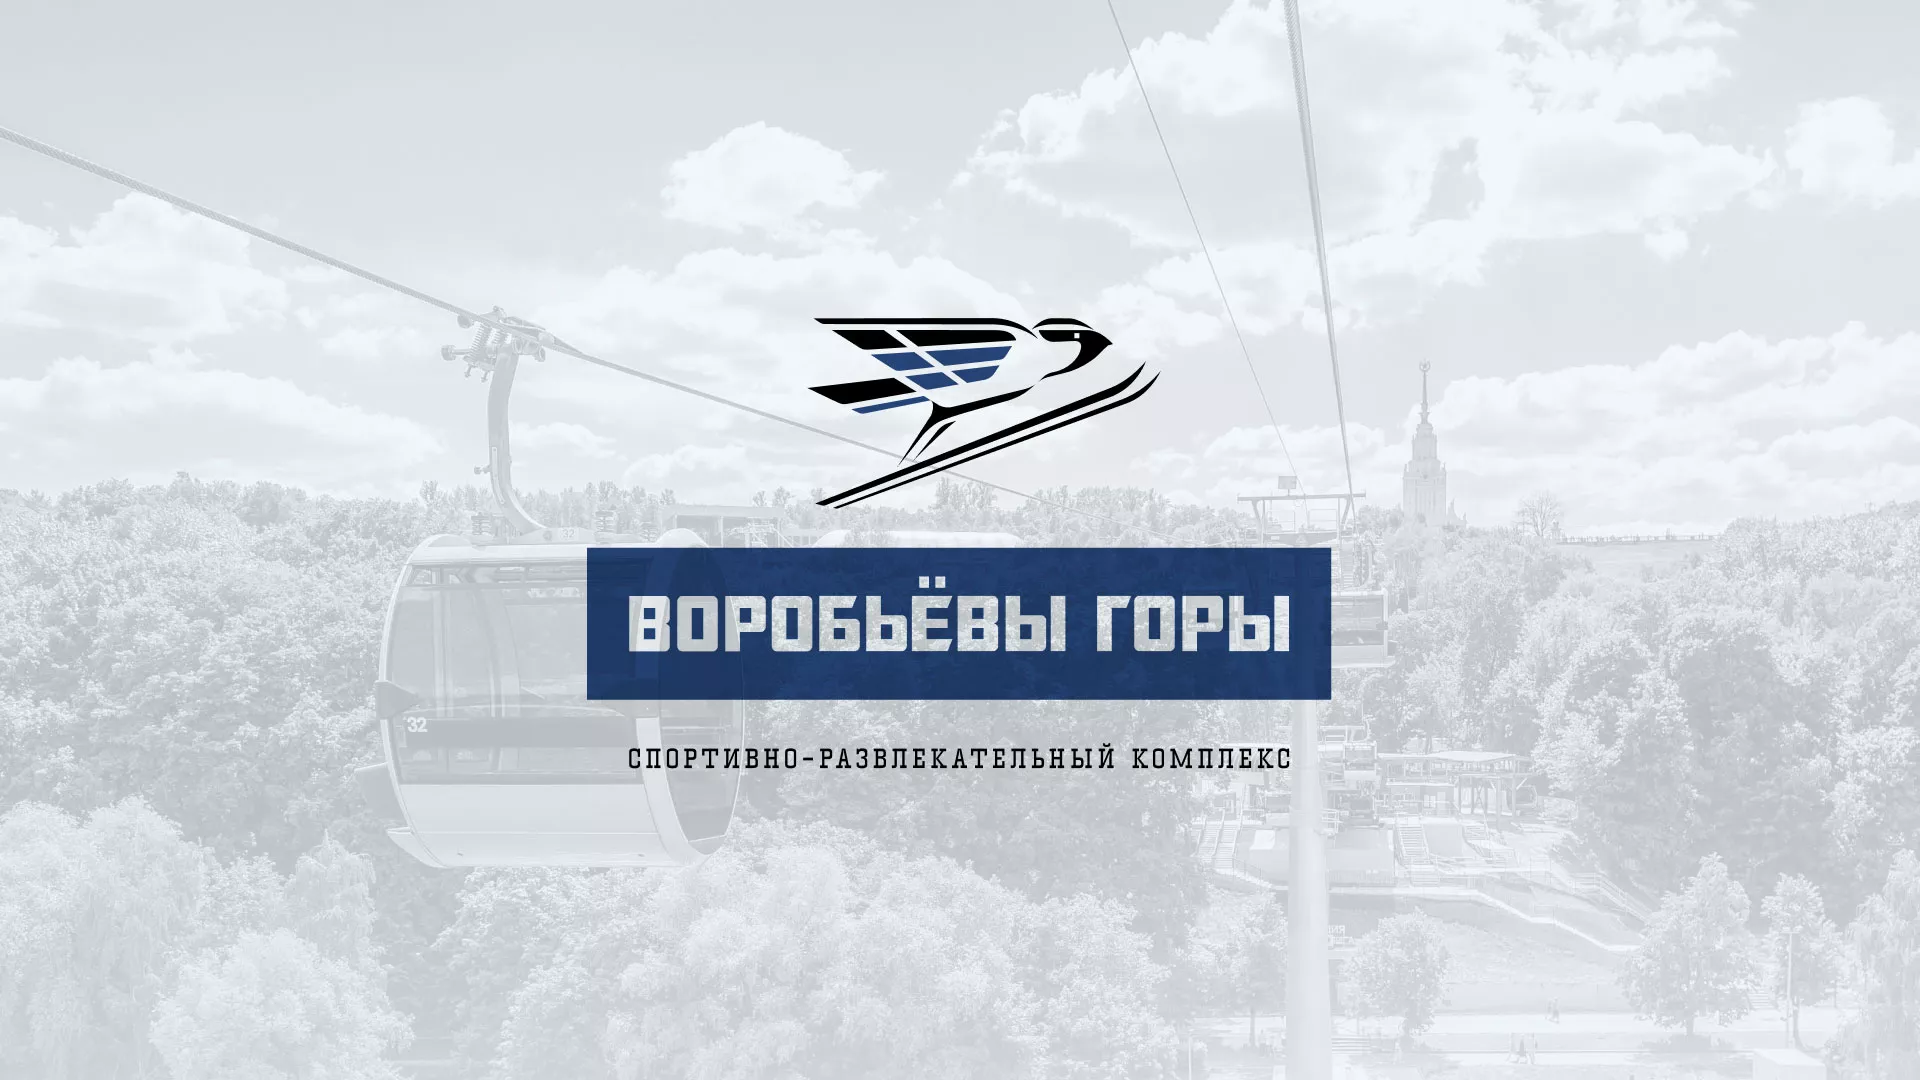 Разработка сайта в Среднеуральске для спортивно-развлекательного комплекса «Воробьёвы горы»